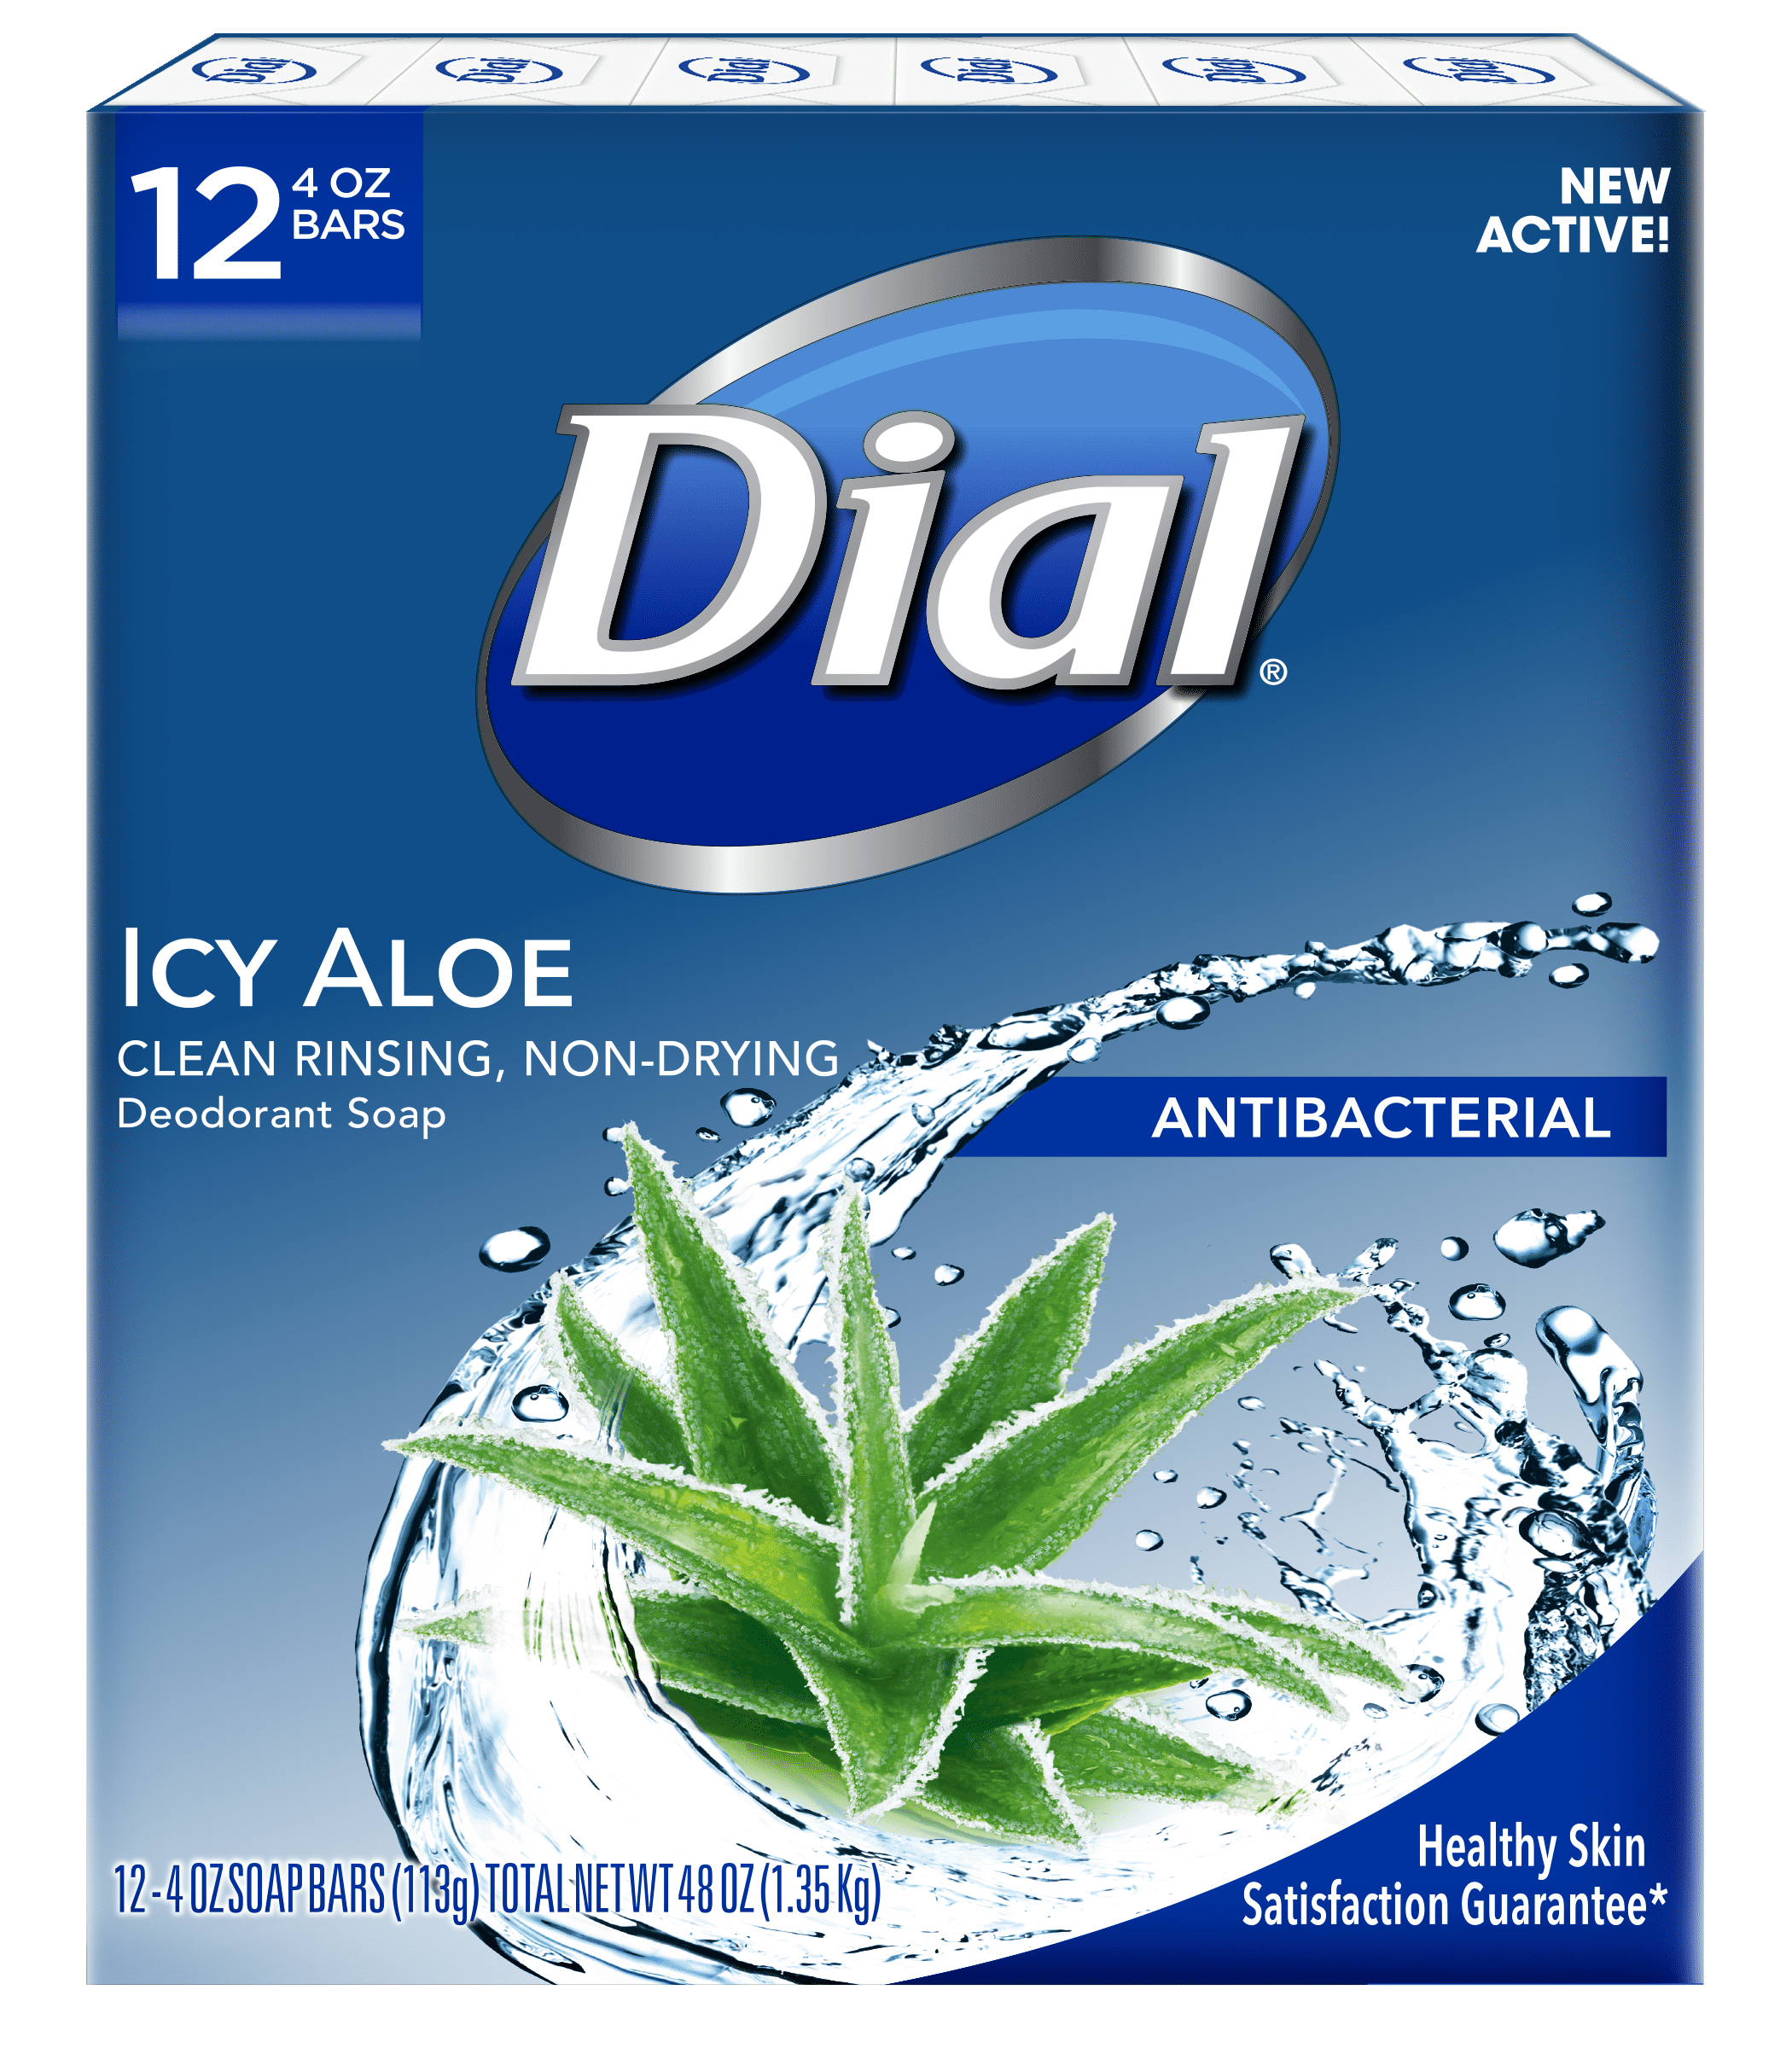 Dial Antibacterial Deodorant Bar Soap, Icy Aloe, 4 Ounce, 12 Bars